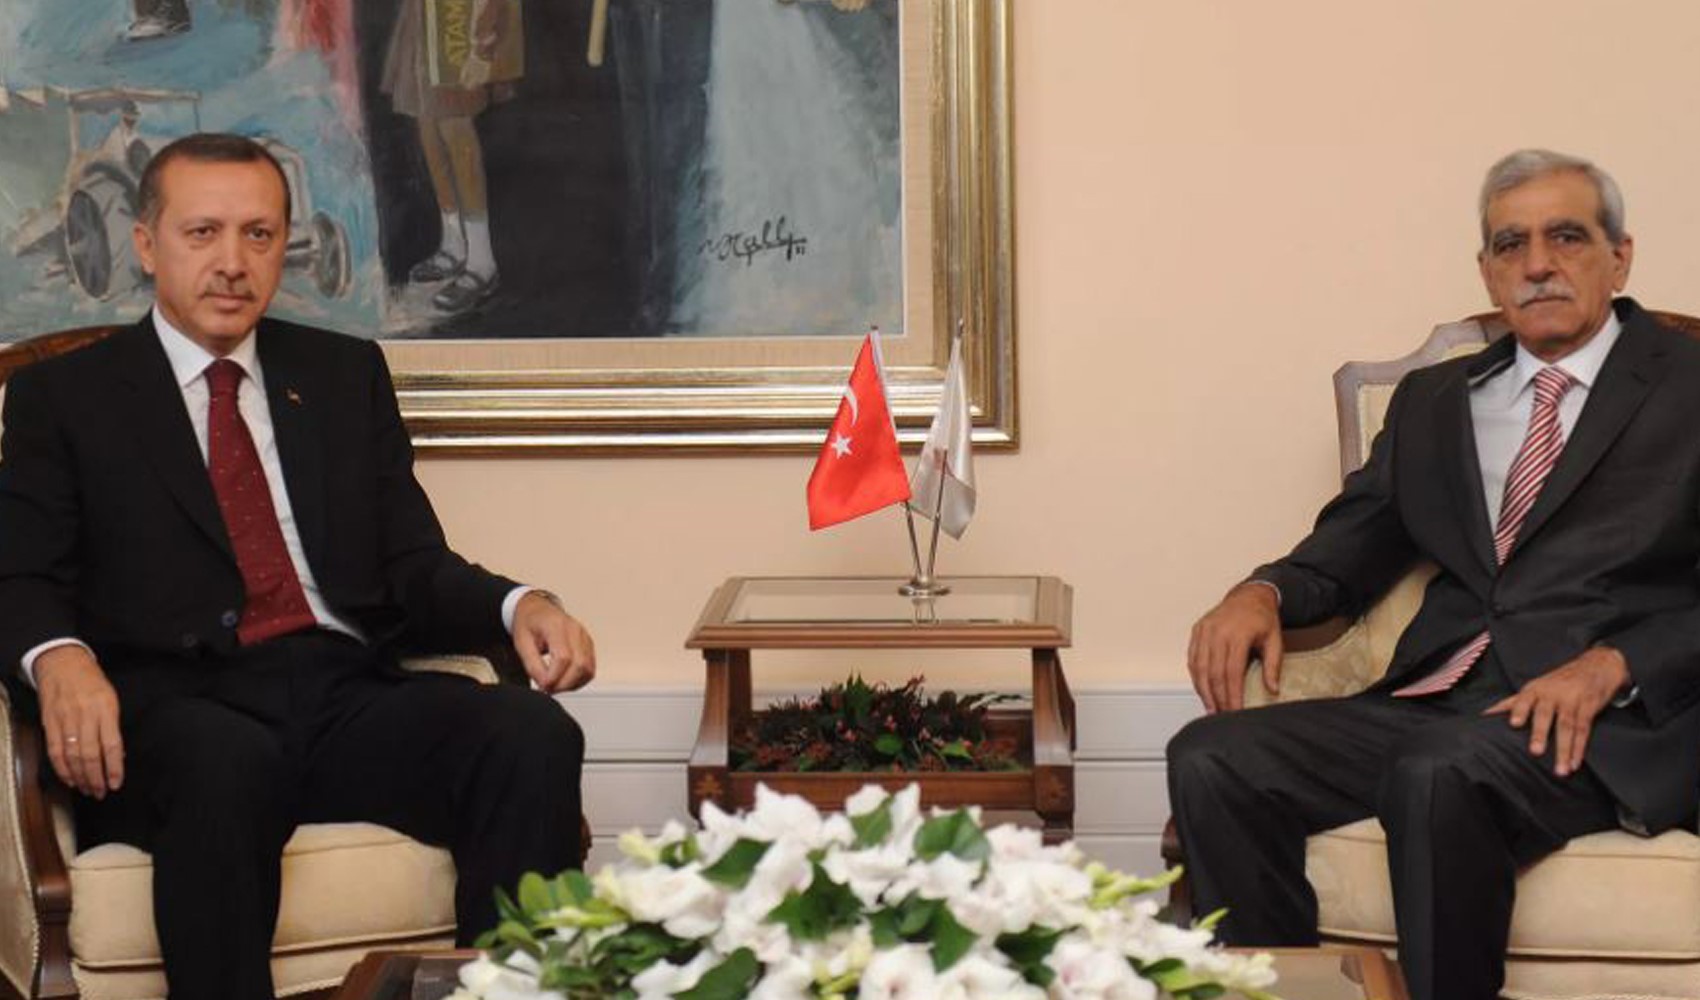 AKP ve DEM arasındaki yakınlaşma sürüyor. Ahmet Türk: Erdoğan isterse ikna edebilir, Sorunu çözebilirler